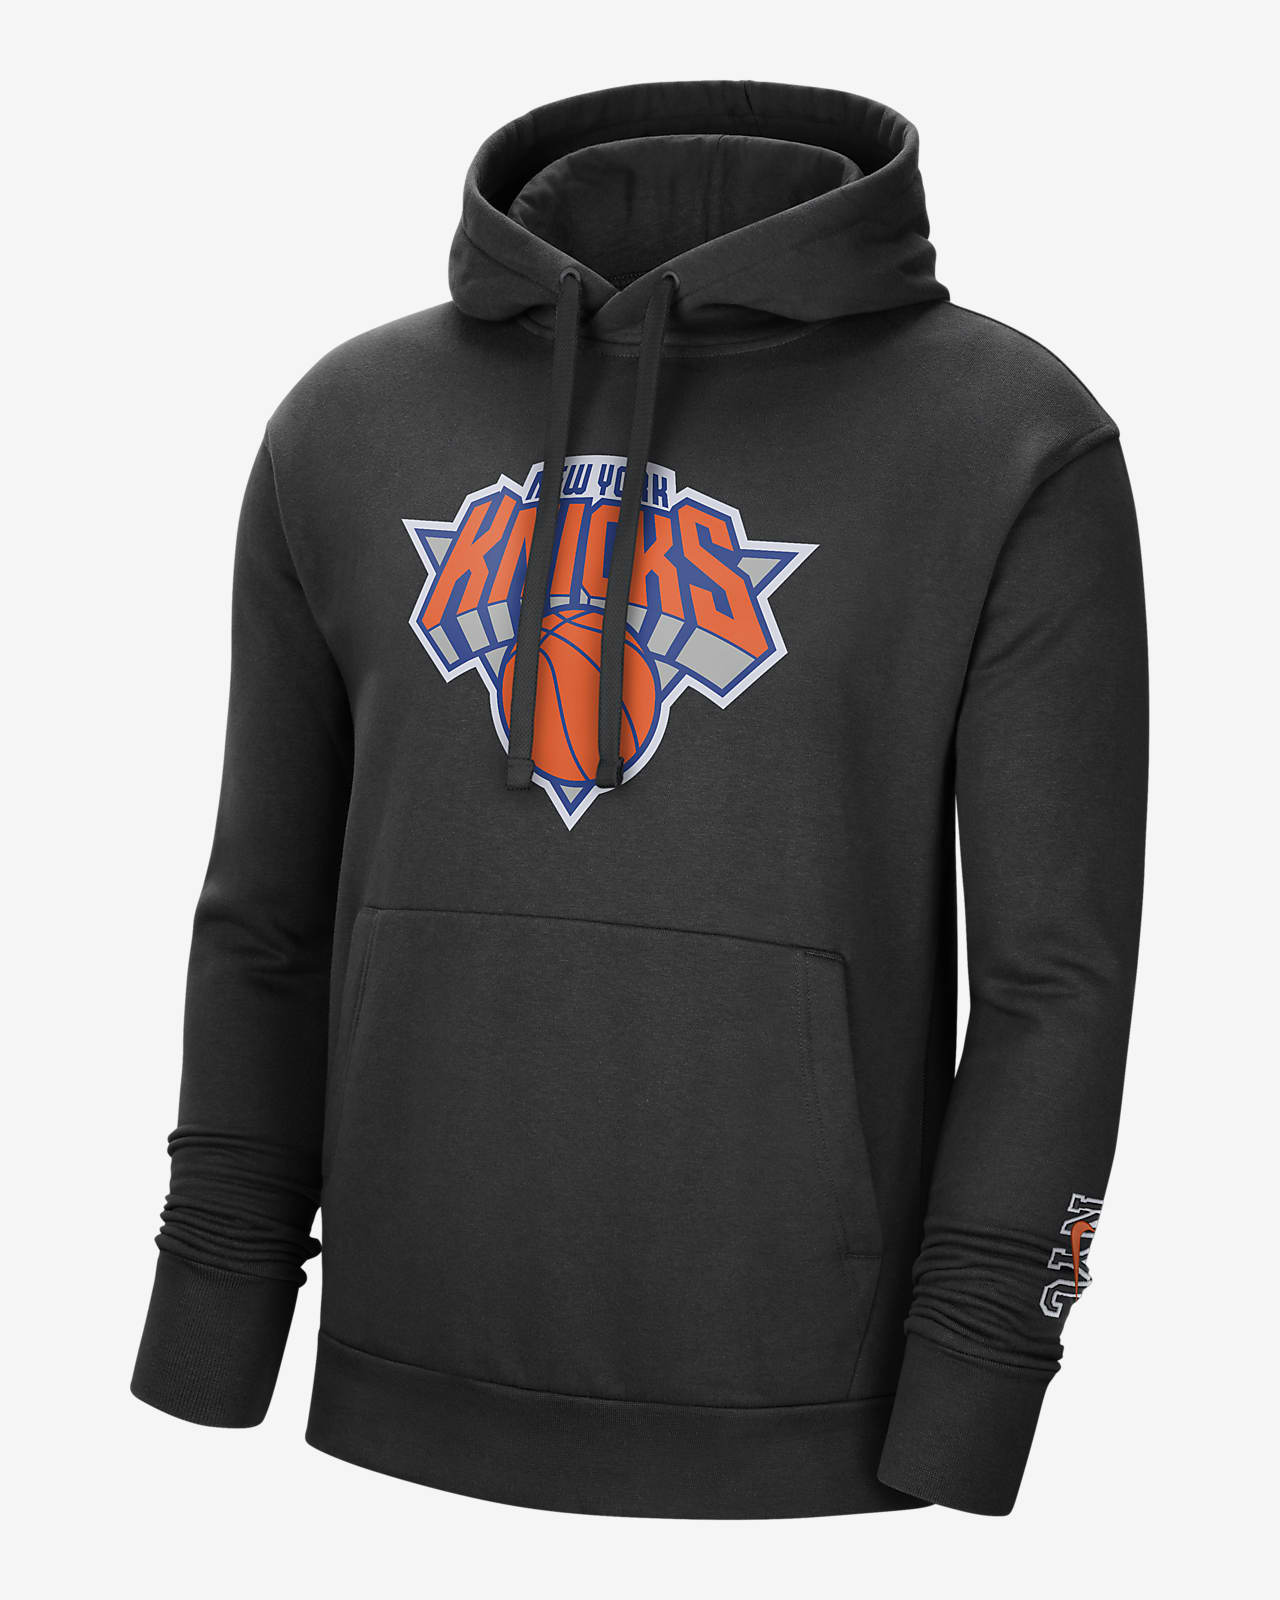 new york knicks nike hoodie